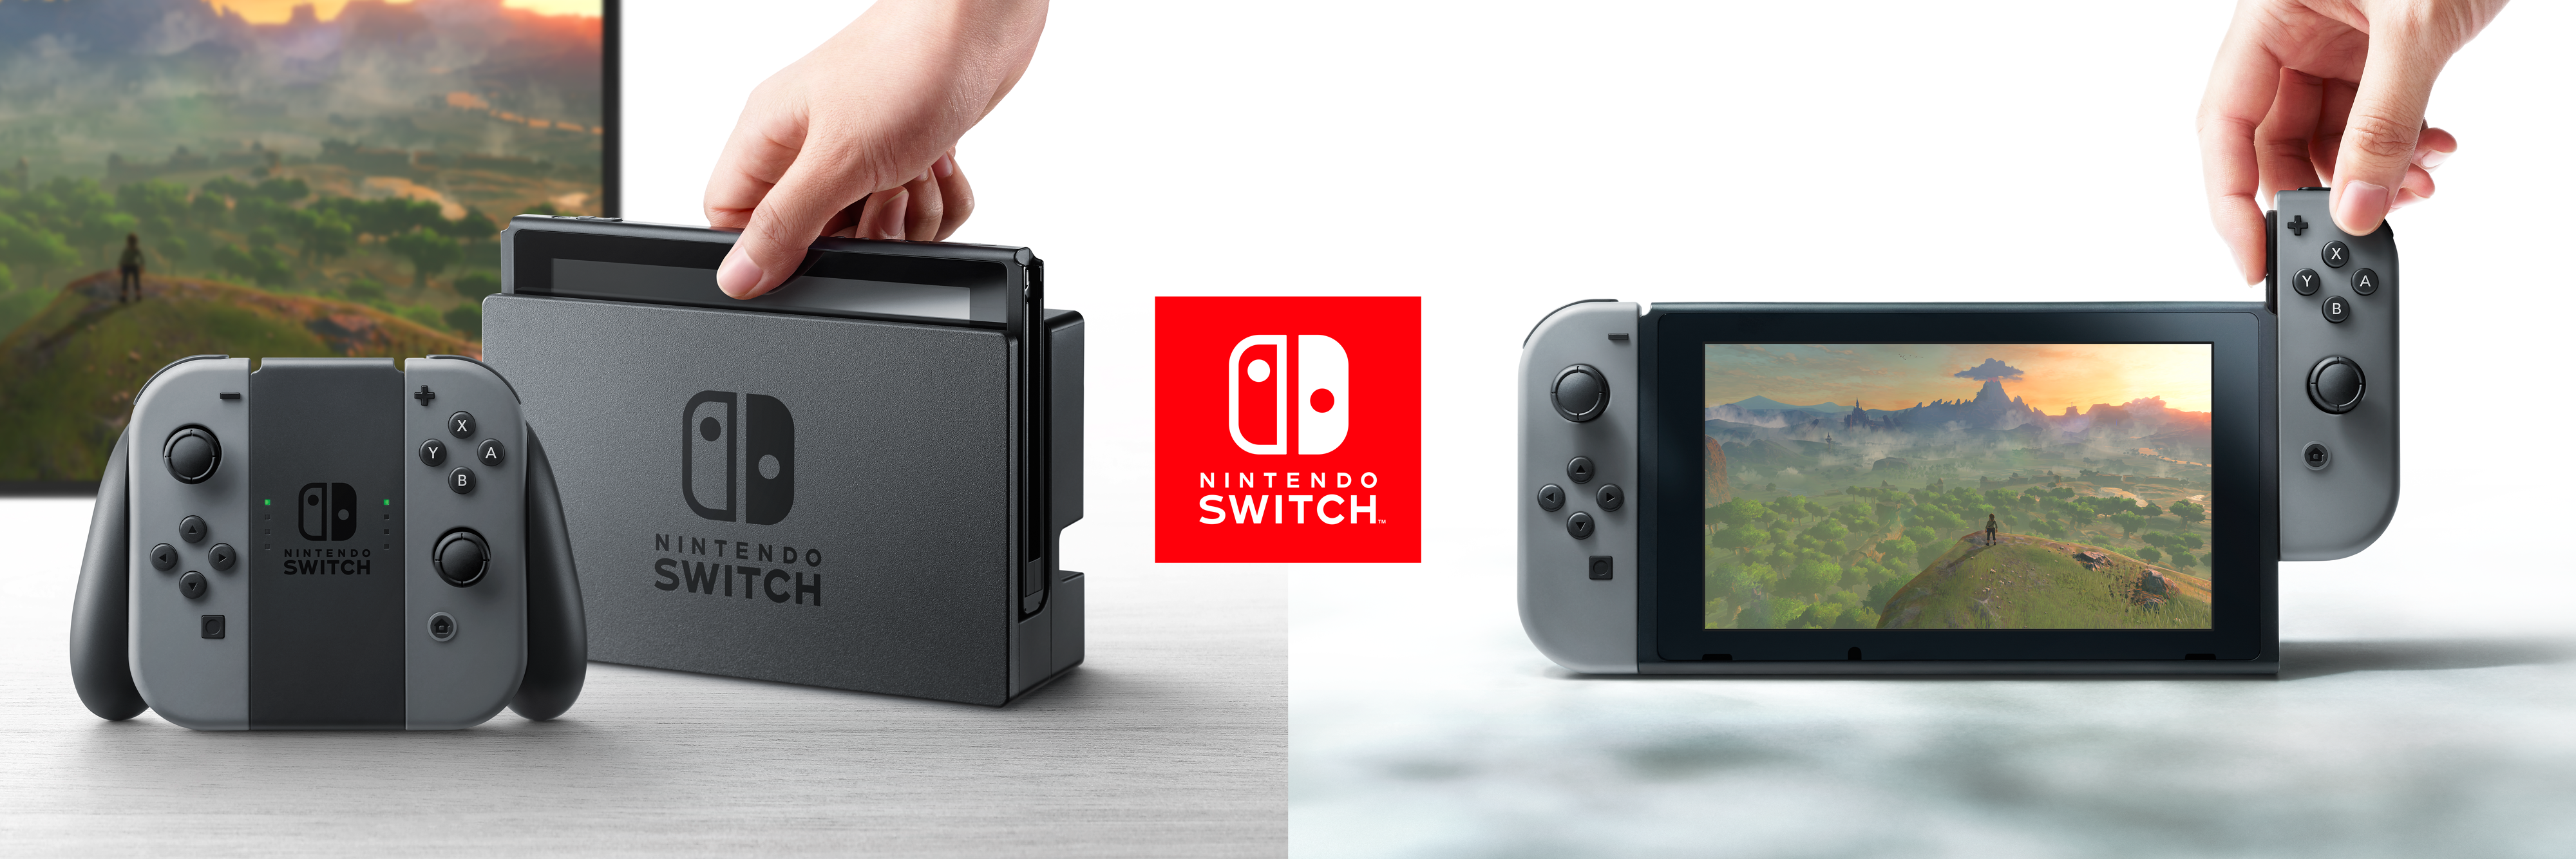 NWTV-panel: Wat vinden we van de Nintendo Switch